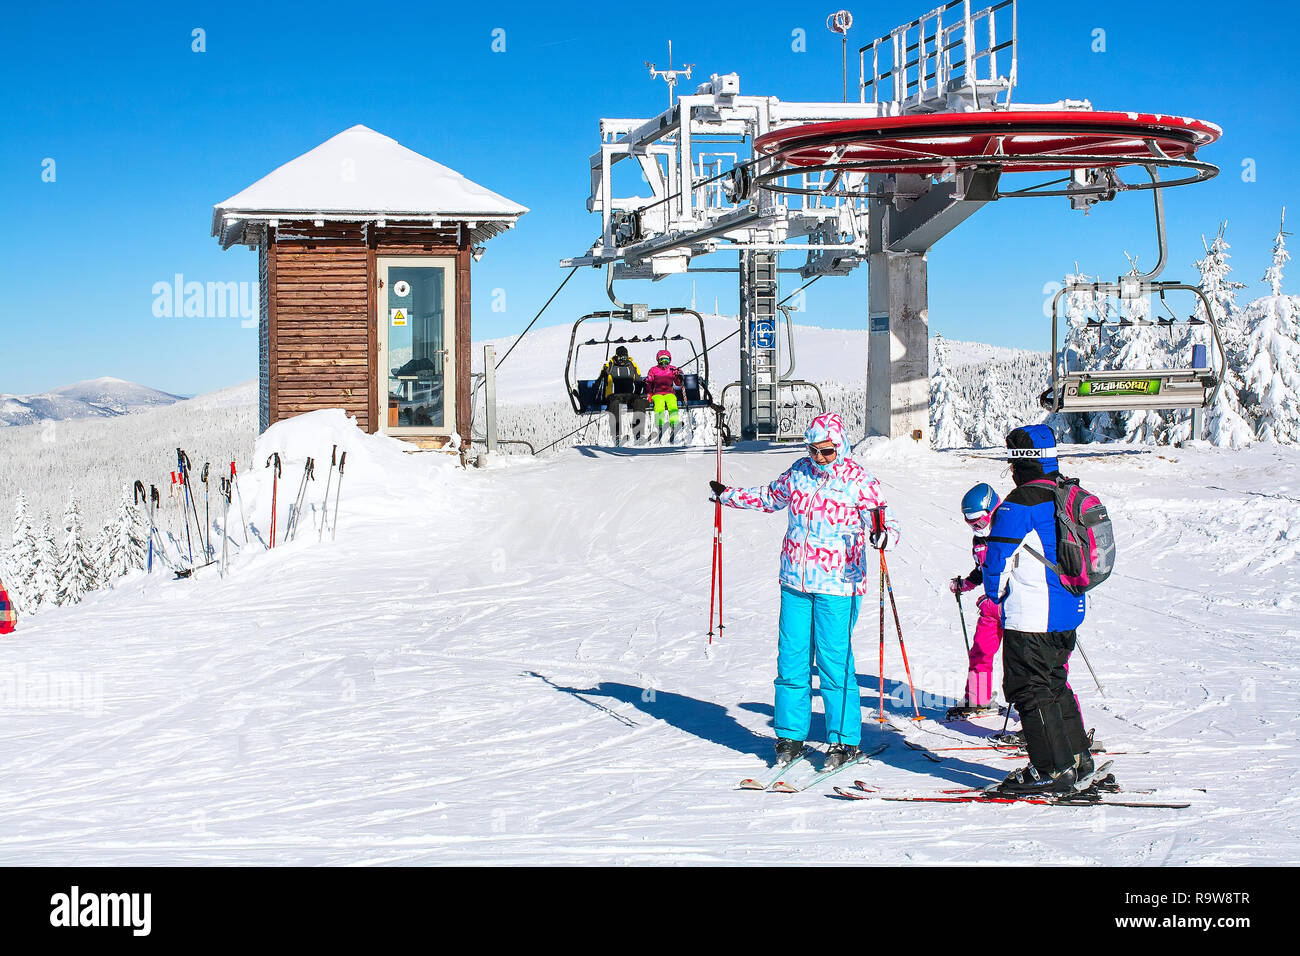 Kopaonik, Serbien - Januar 22, 2016: Skigebiet Kopaonik, Serbien, Skilift, Skipiste, Leute unten Skifahren von der Hebebühne Stockfoto